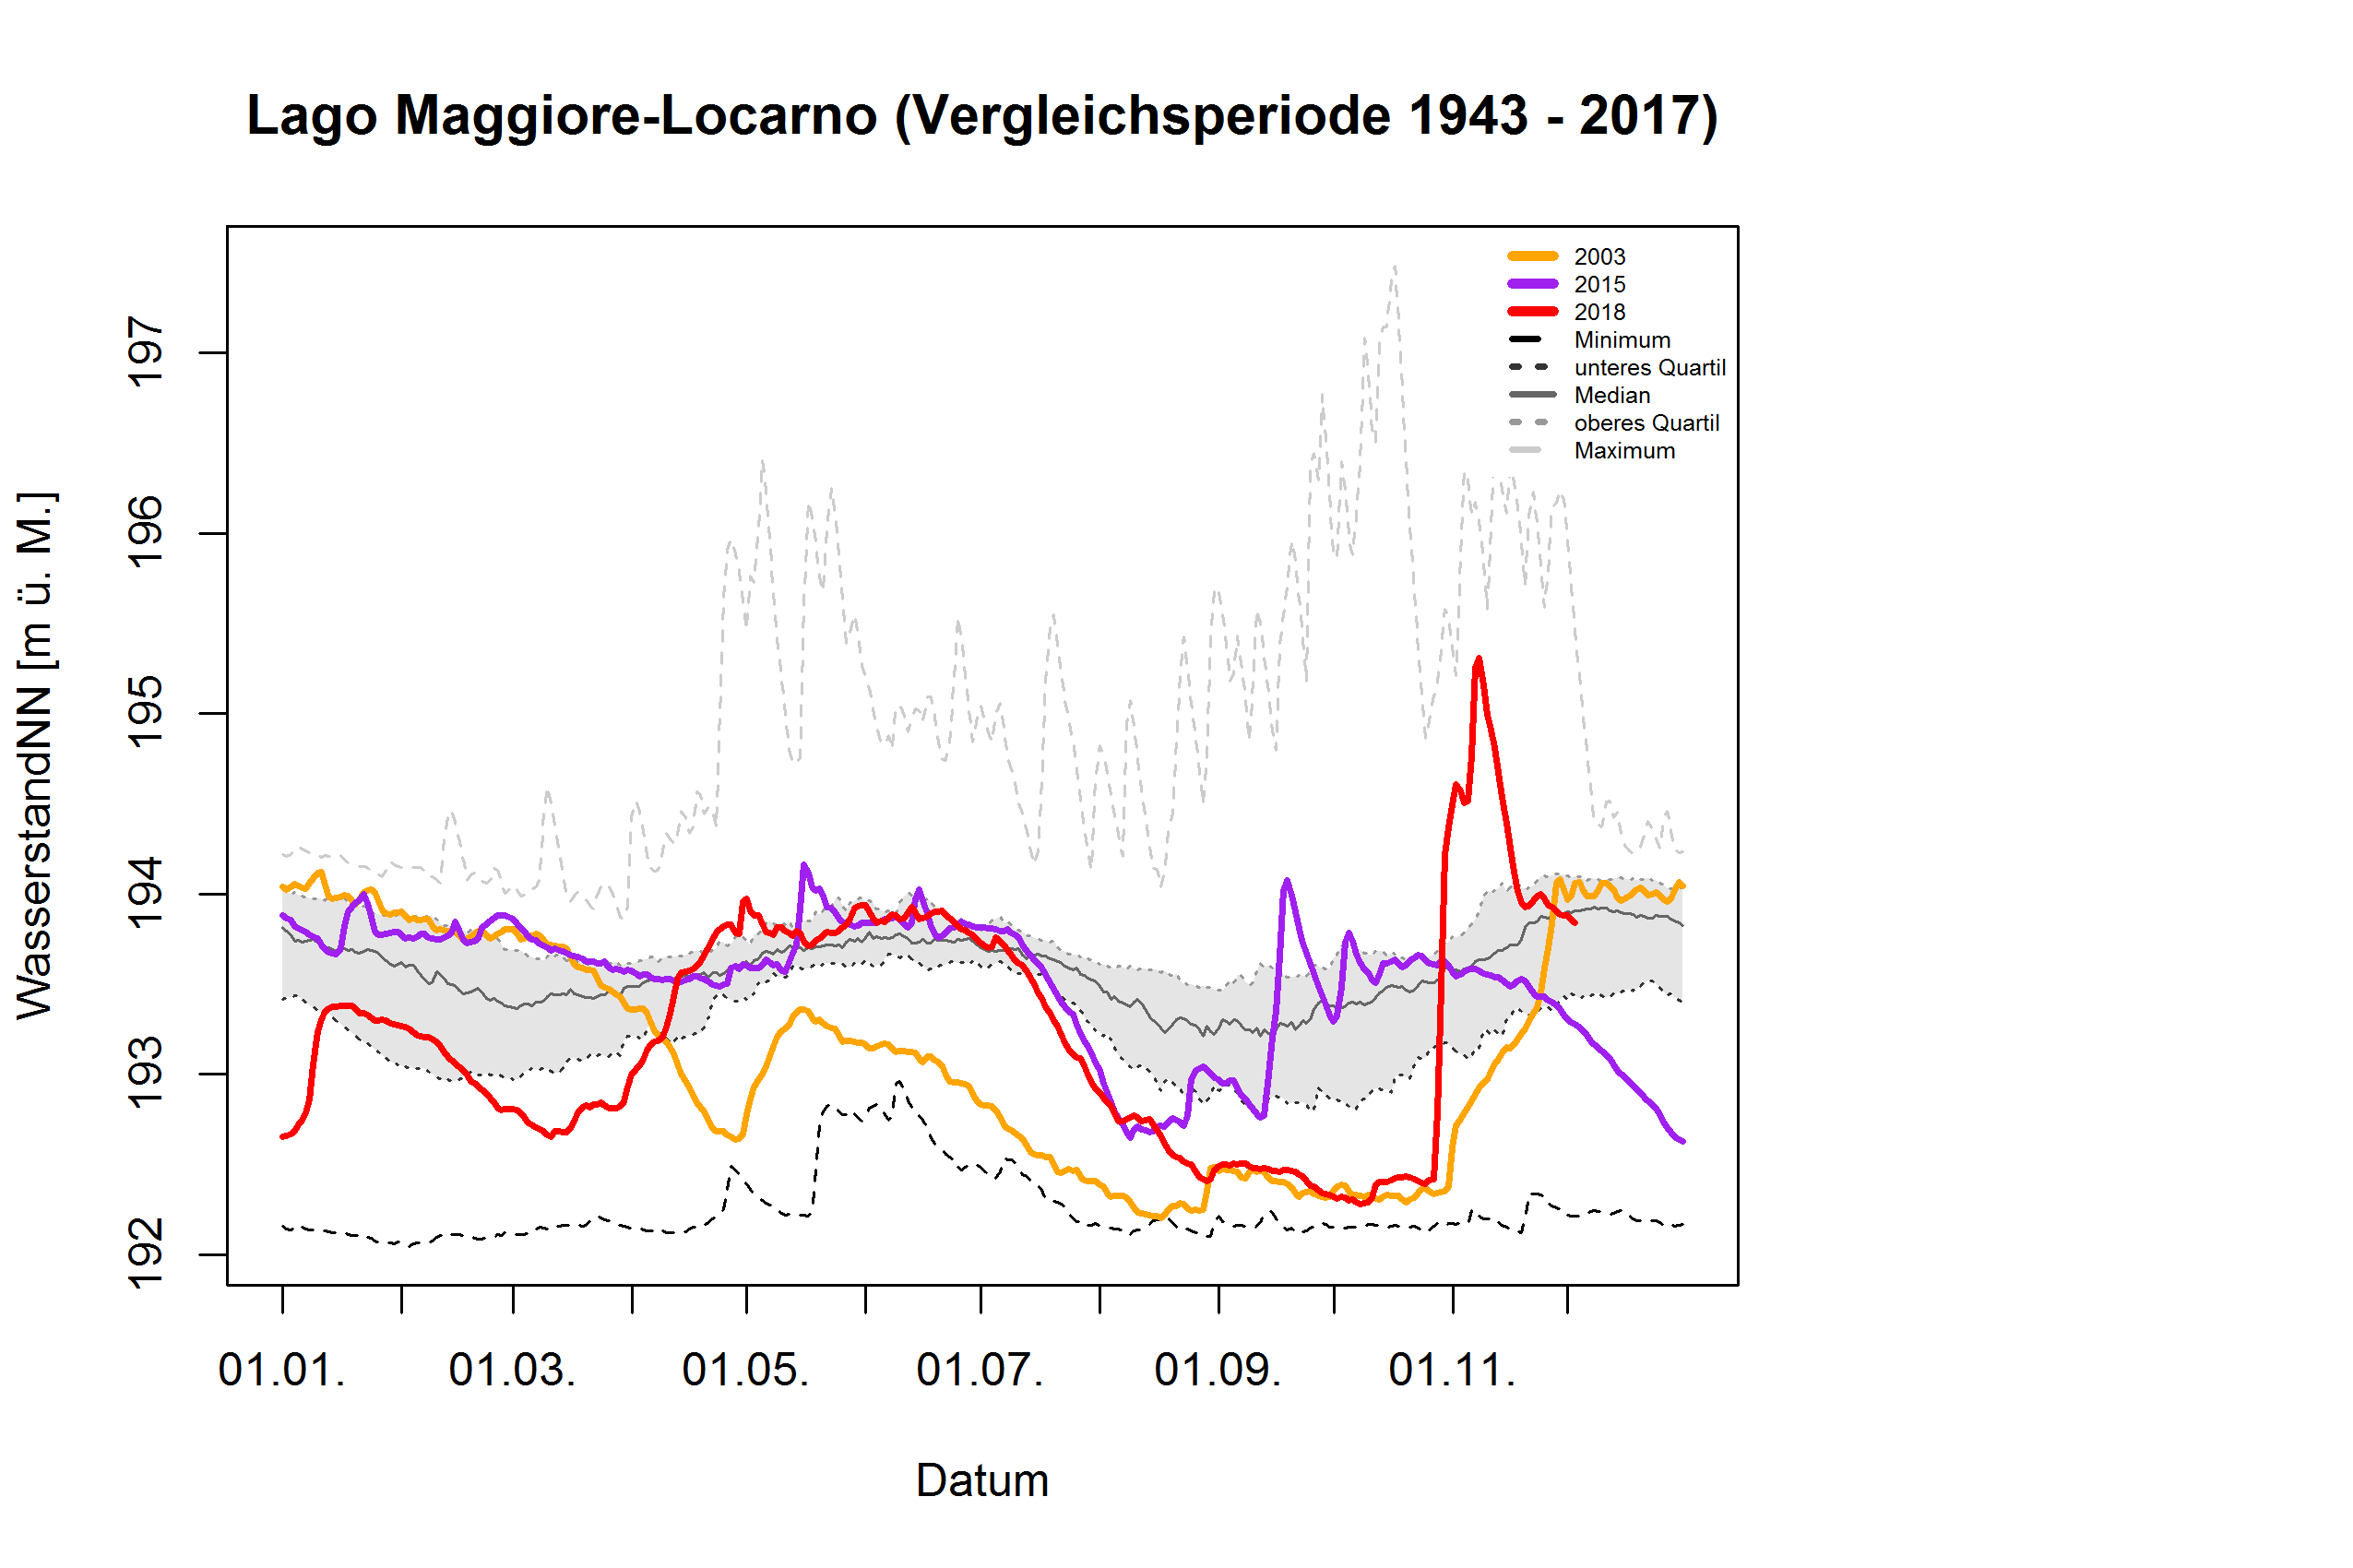 Lago Maggiore - Locarno: Vergleichsperiode 1943 - 2017